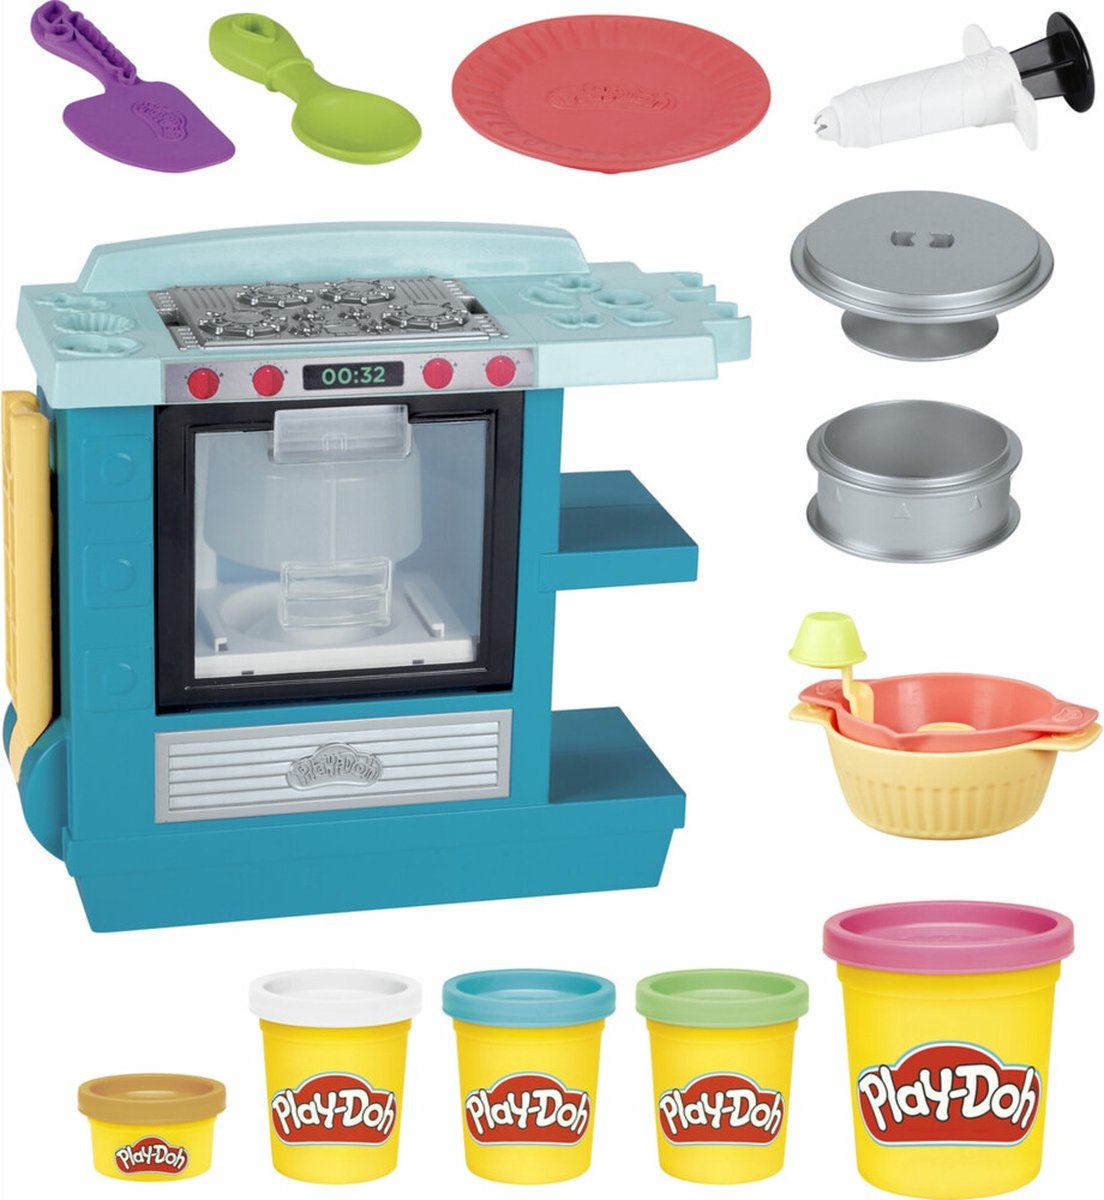 Play-Doh Prachtige Taarten Oven - Klei Speelset | bol.com